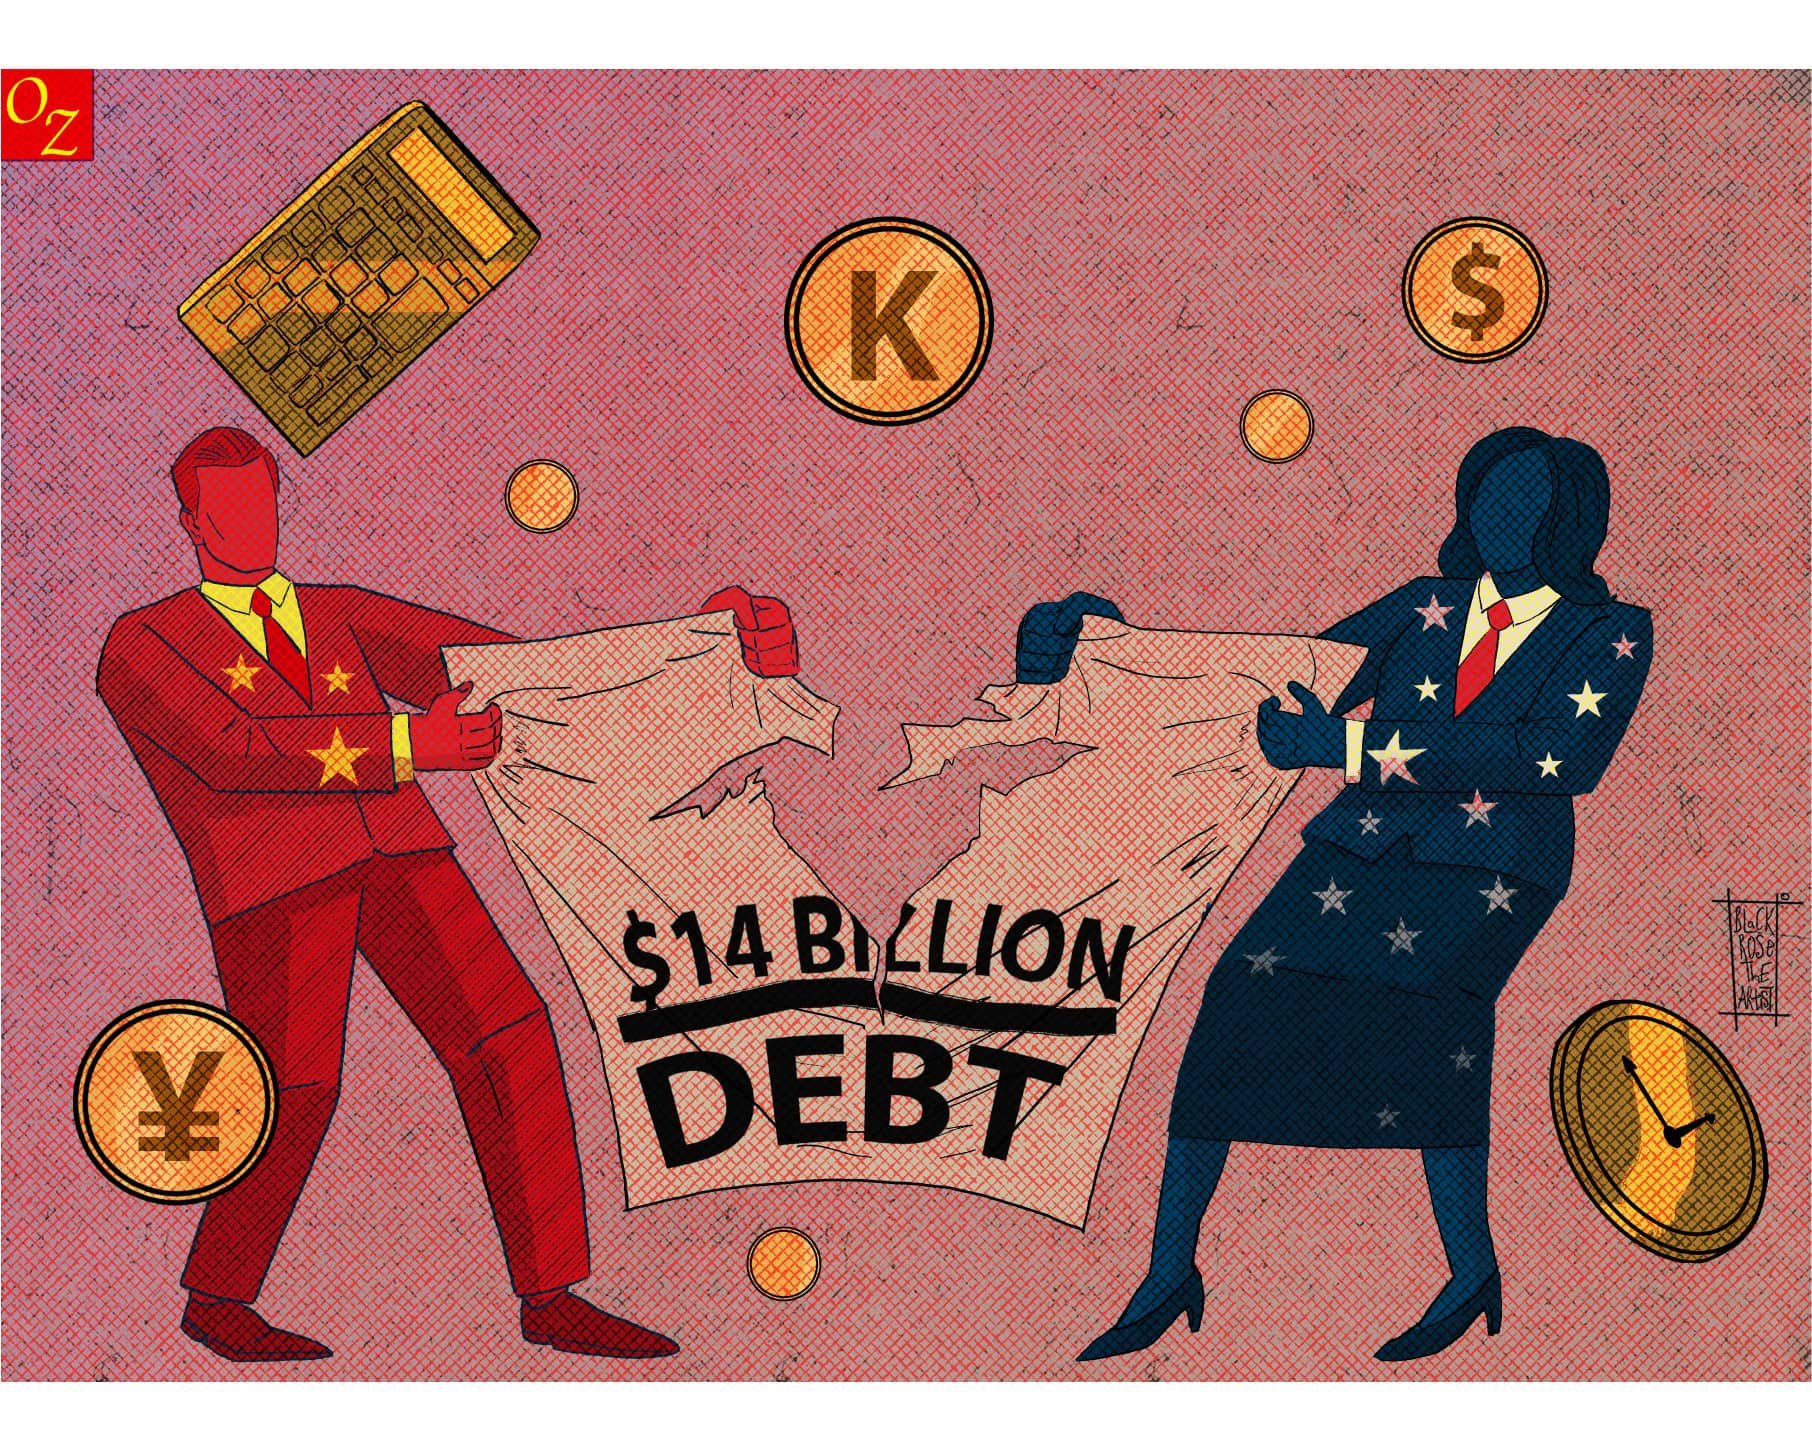 debt carton.jpg